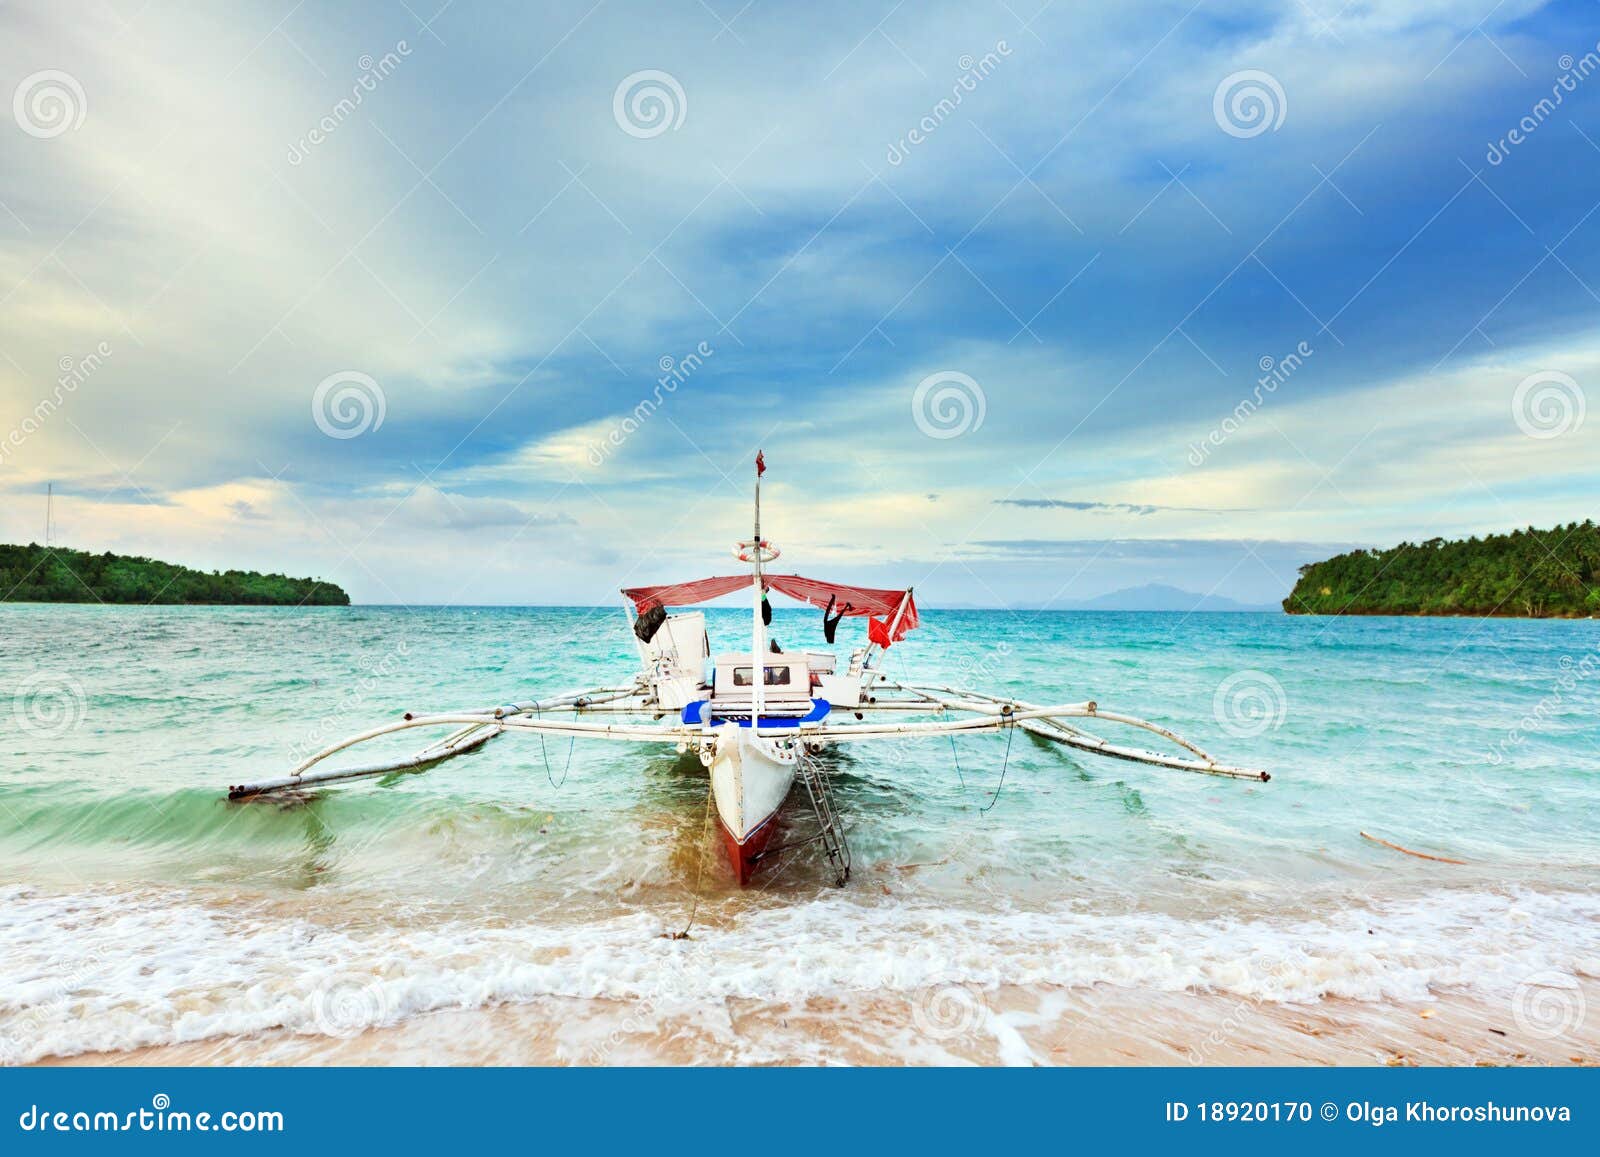 Philippine Boat Stock Photo - Image: 18920170